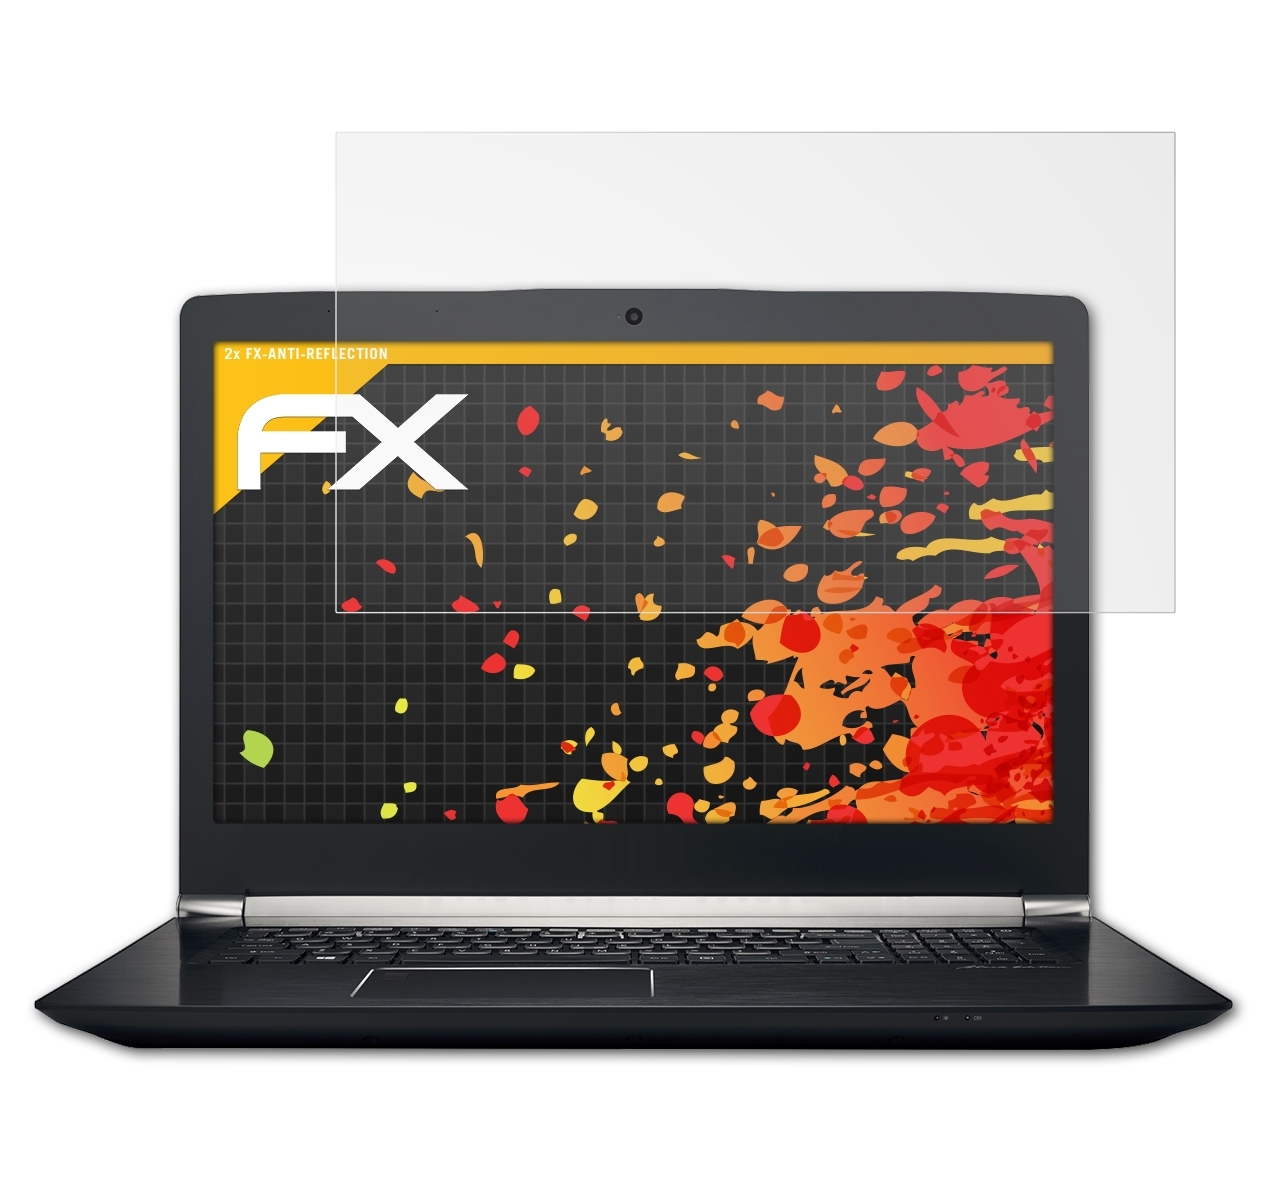 ATFOLIX 2x (17,3 Aspire FX-Antireflex 7-793G Acer inch)) V Nitro Displayschutz(für